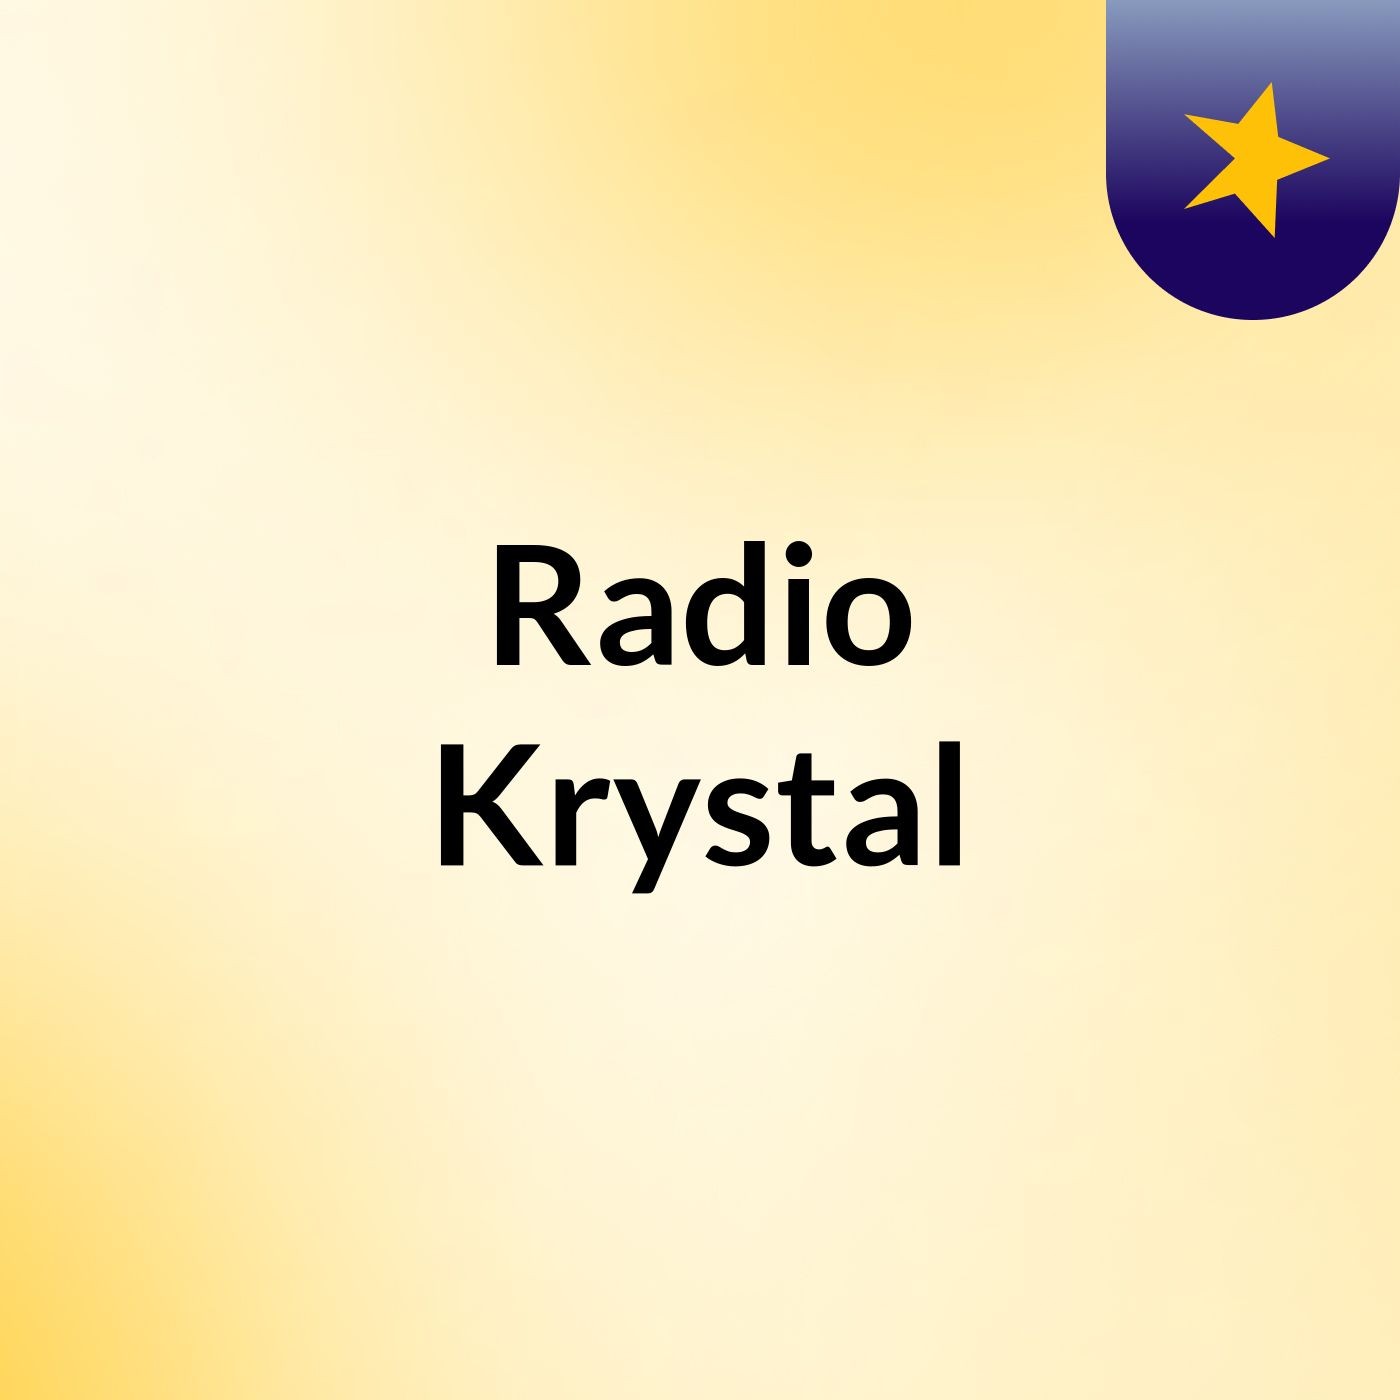 Wasssup World Radio Krystal Here